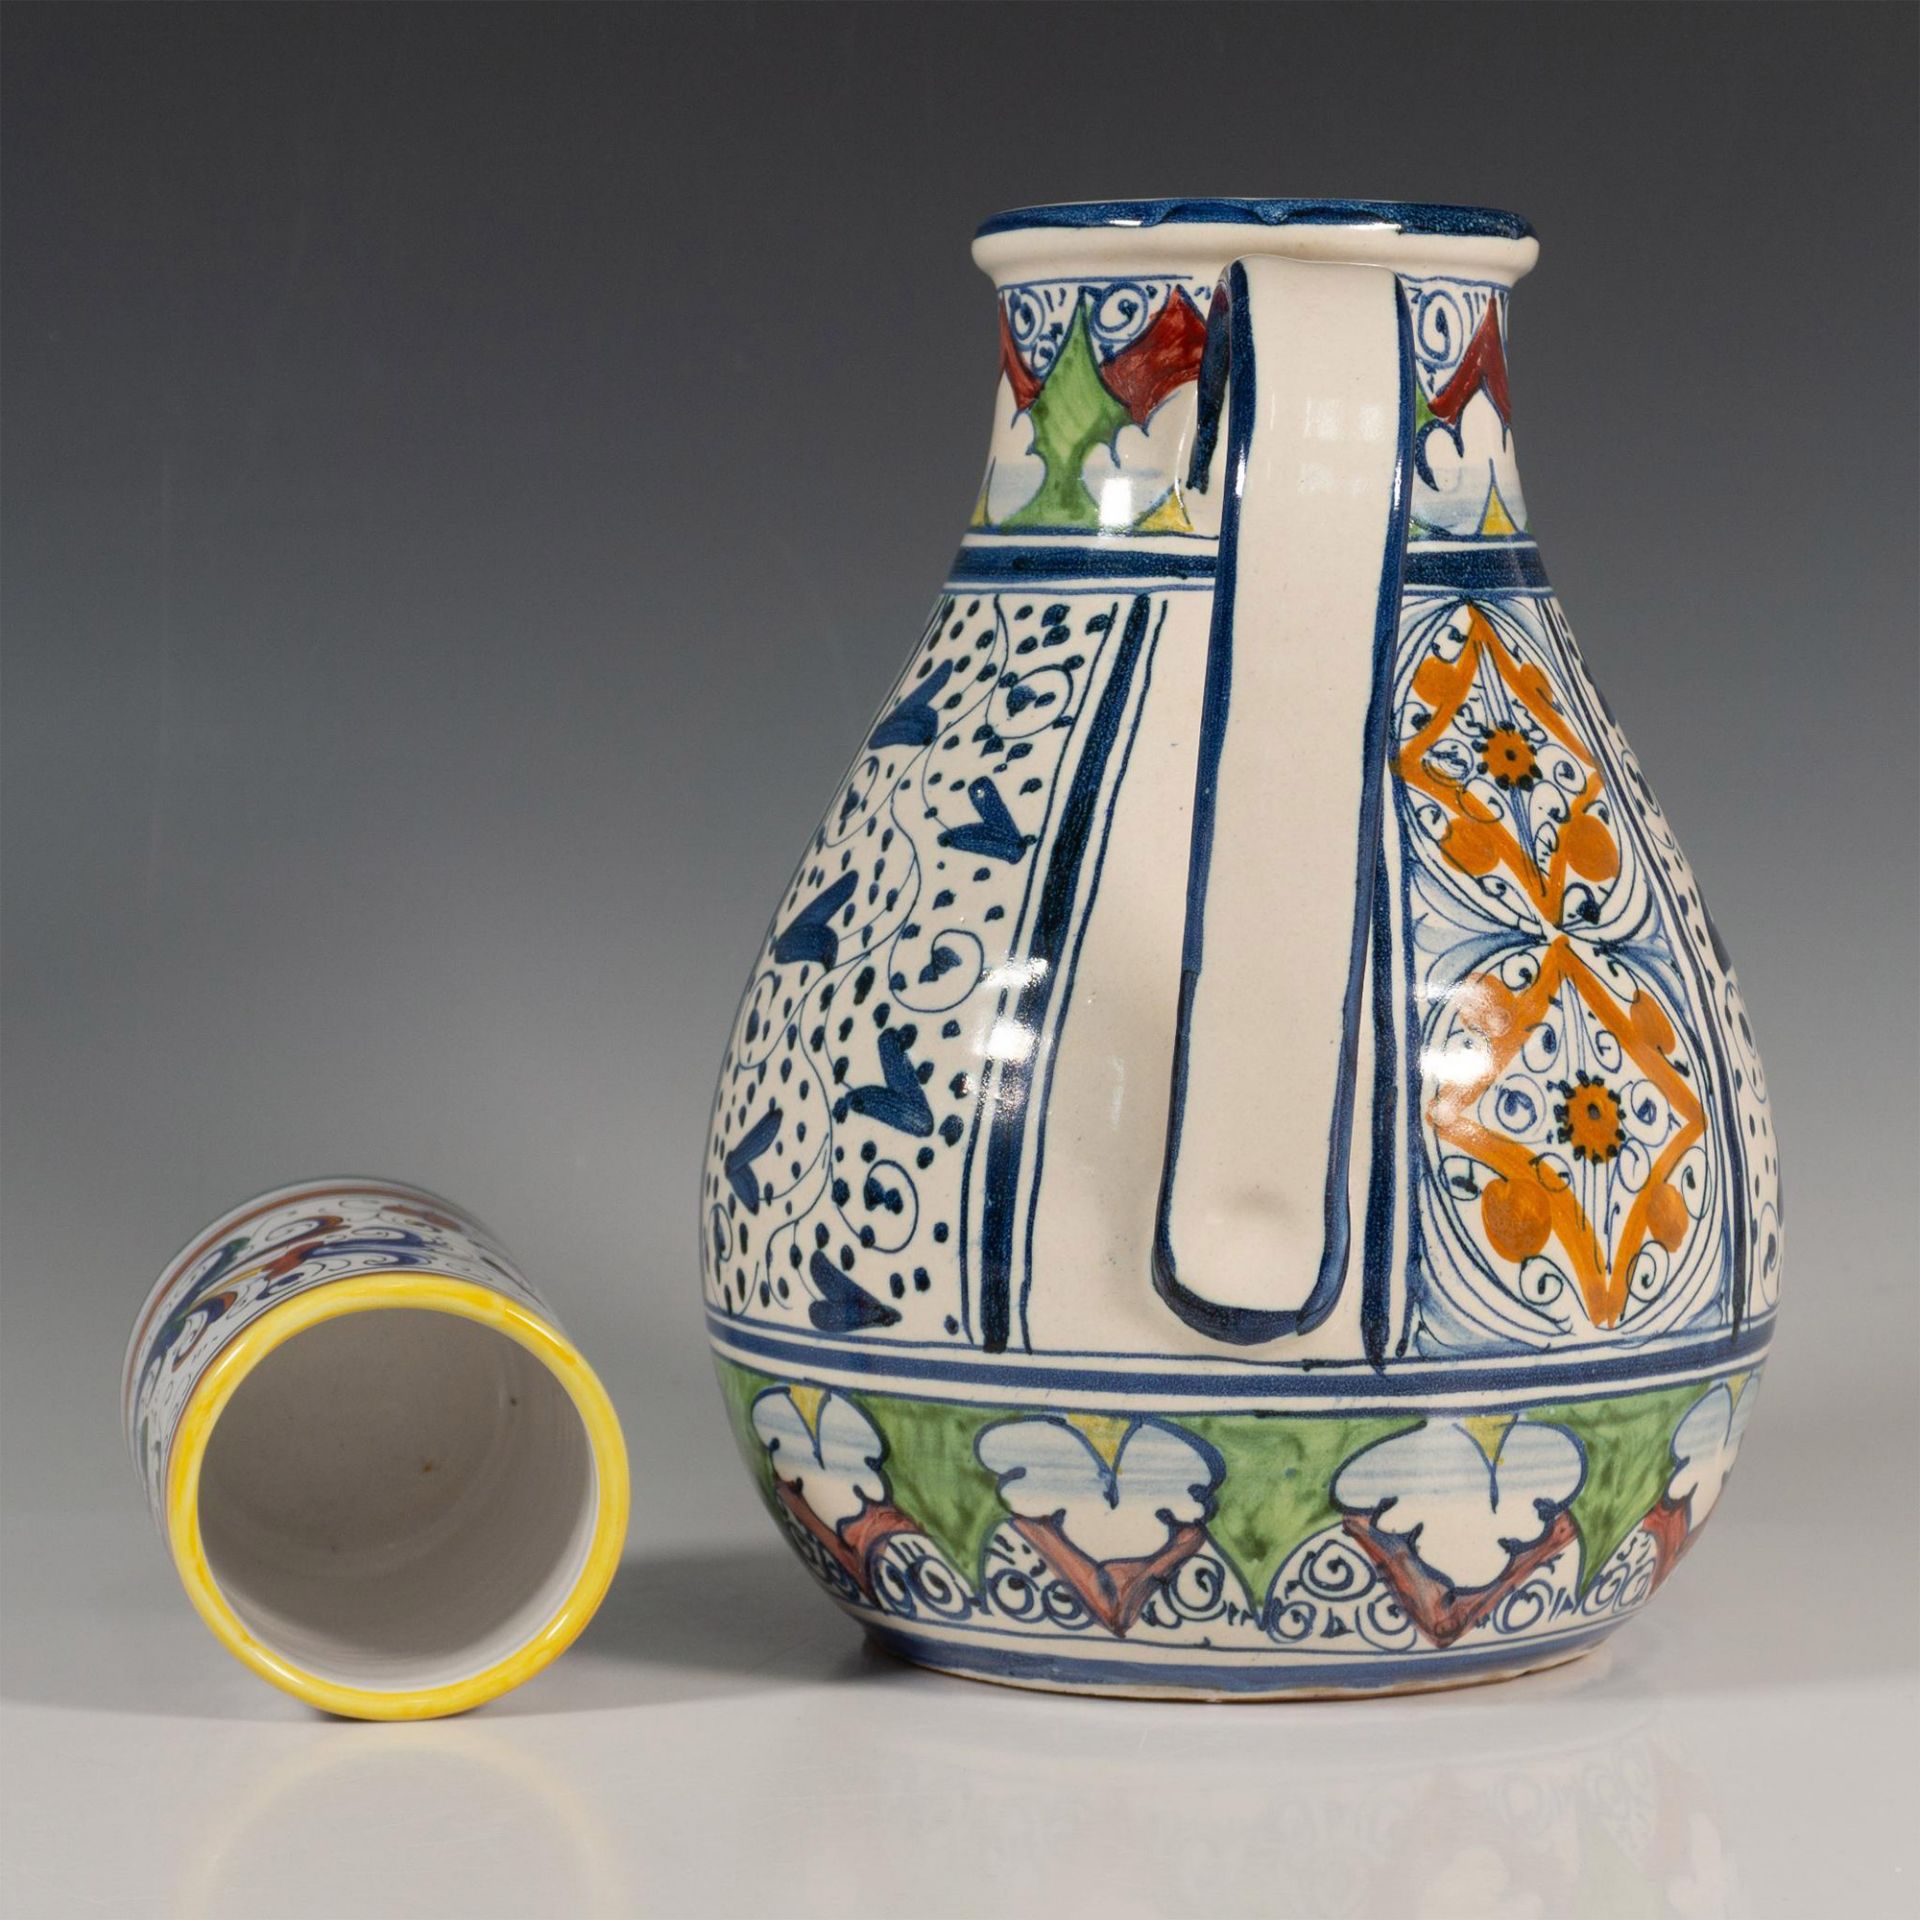 Original Hand-Painted Ceramic Carafe & S. Gimignano Tumbler - Bild 4 aus 5